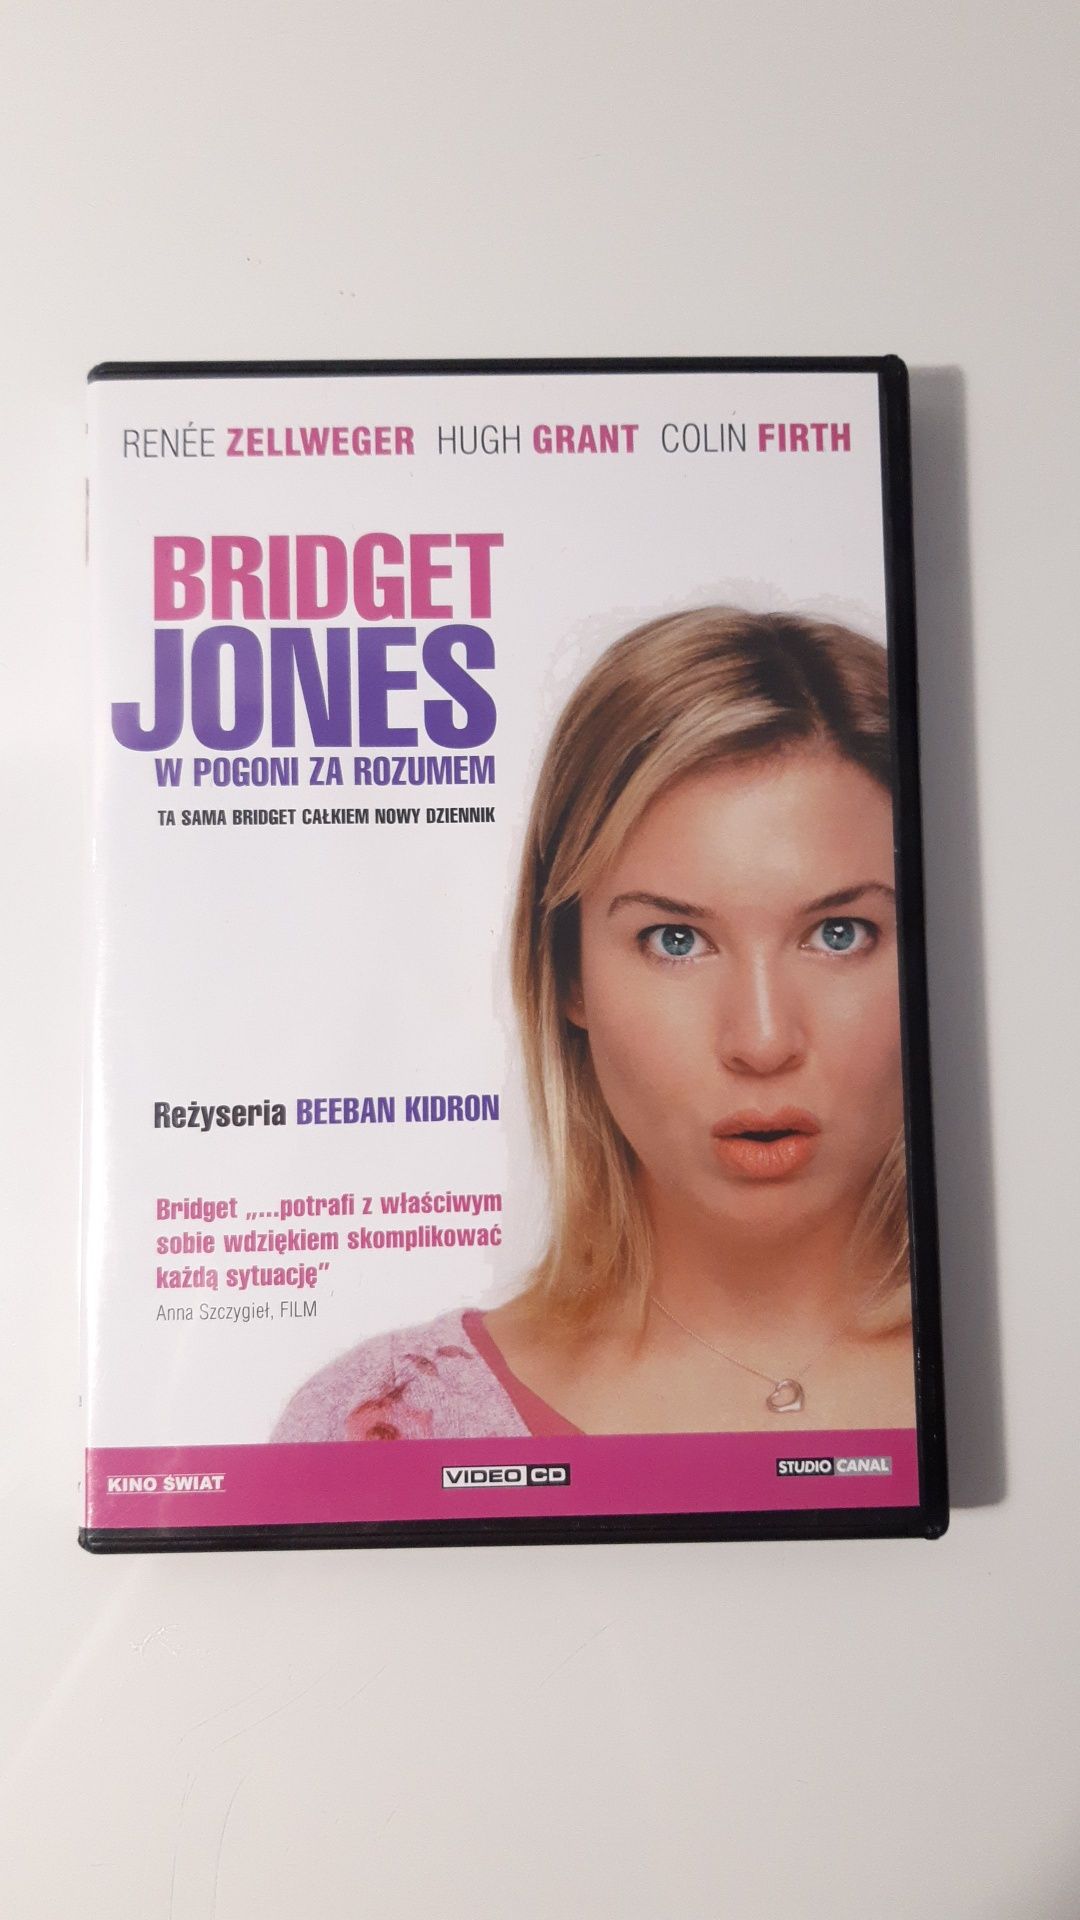 2 Płyty dvd "Bridget Jones"